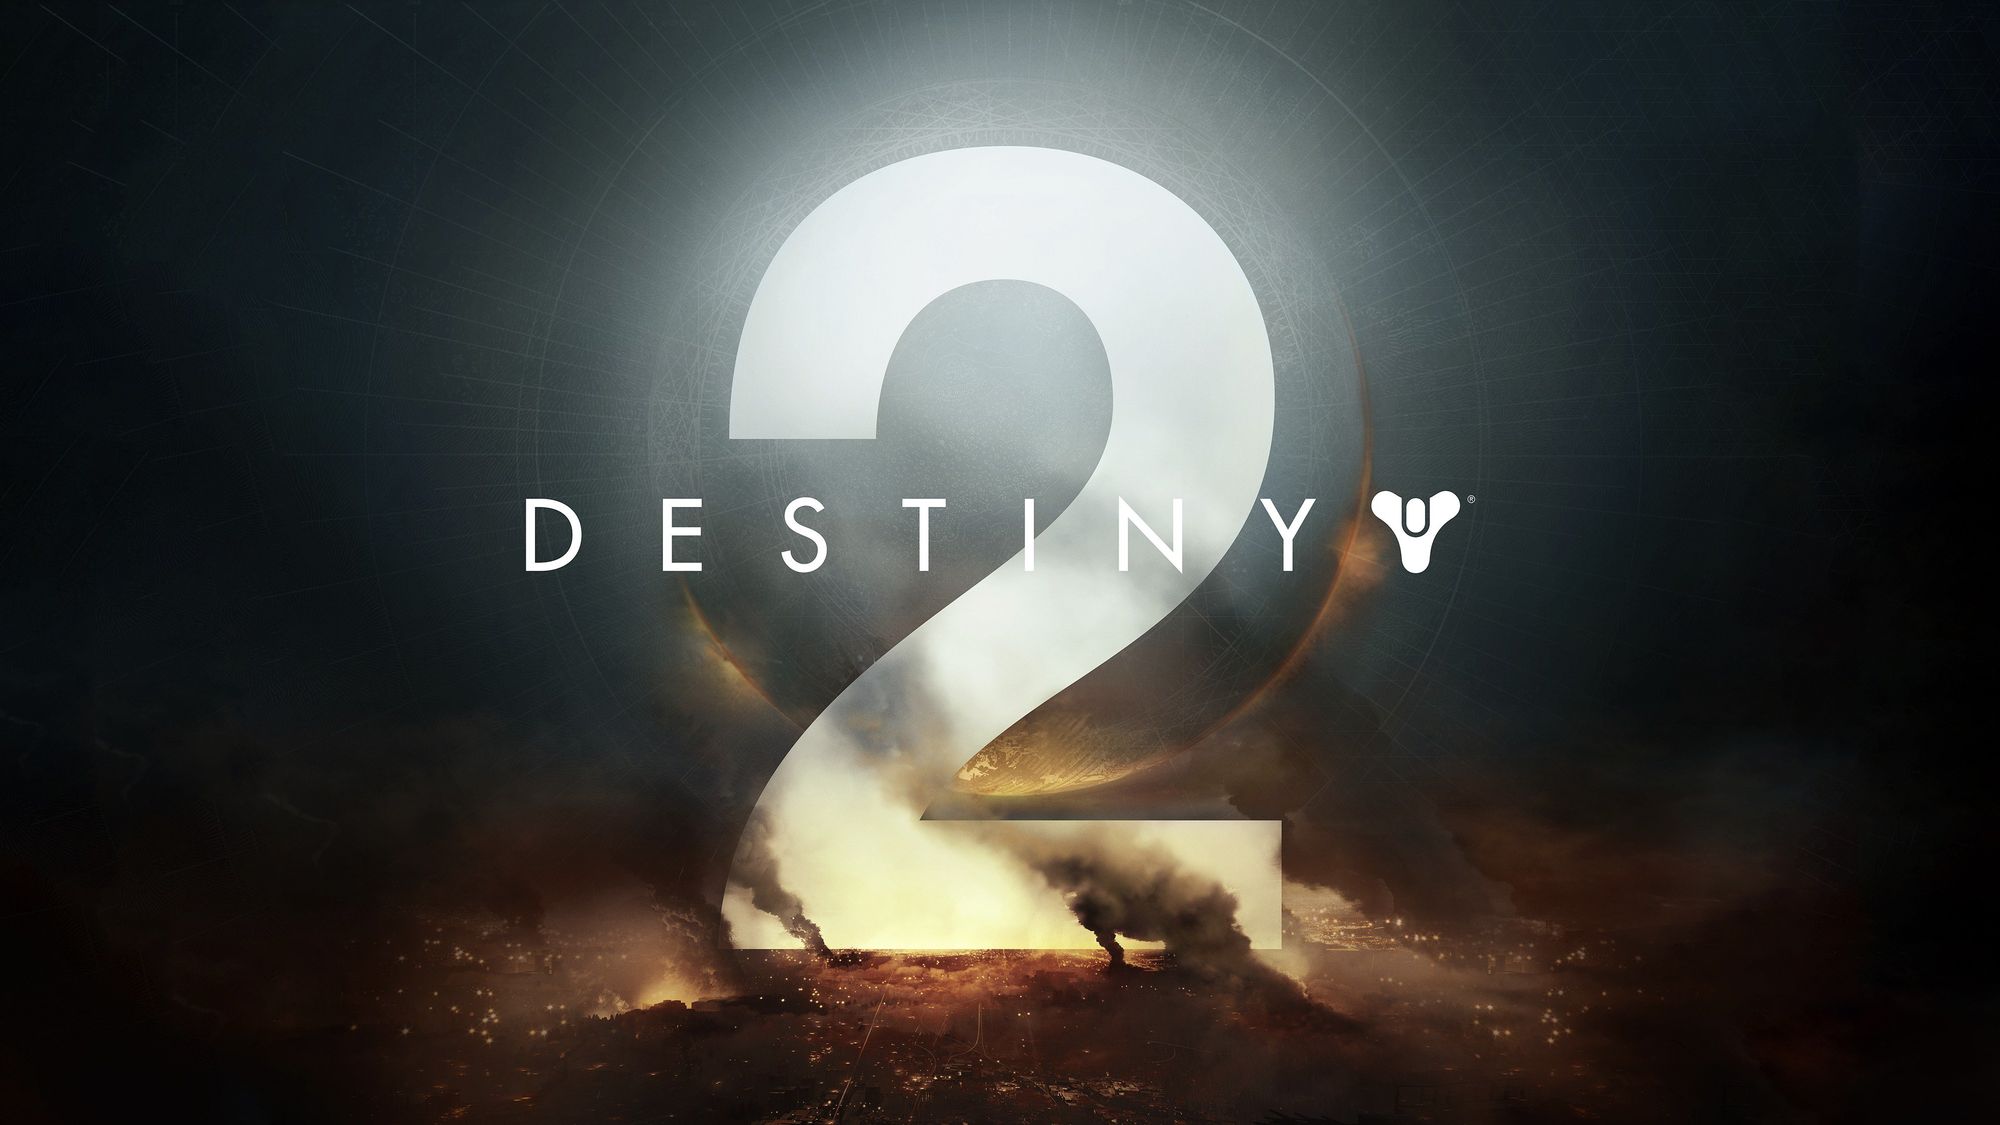 Imagen de anuncio de la expansión New Light del video juego Destiny 2. Se ve un número dos grande que ocupa el centro de la imagen y esta sobre una ciudad que aparenta estar en fuego o bajo ataque